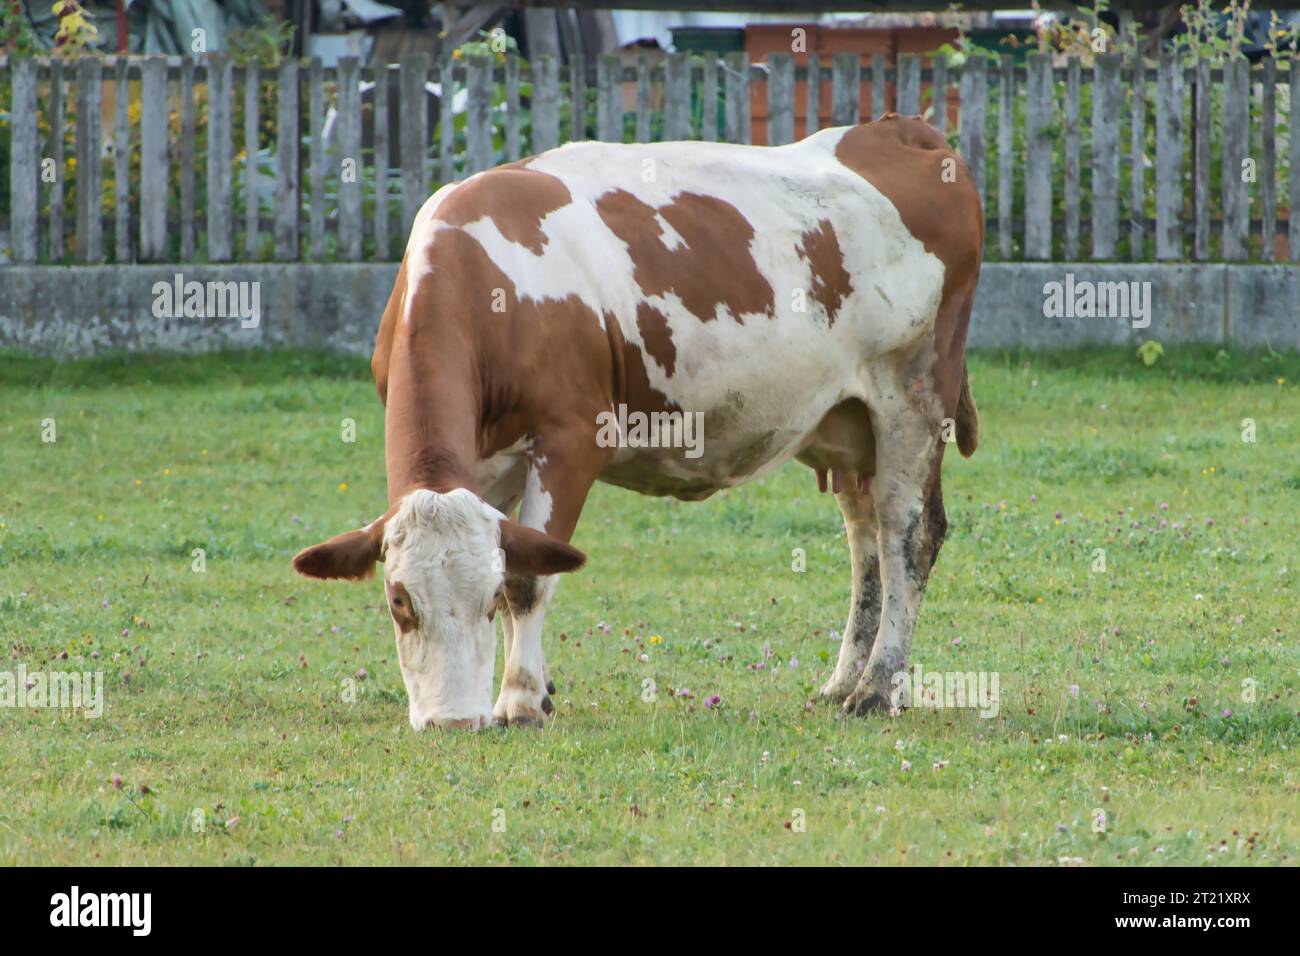 Una scena idilliaca di una mucca marrone e bianca che pascolava in un prato verde lussureggiante Foto Stock